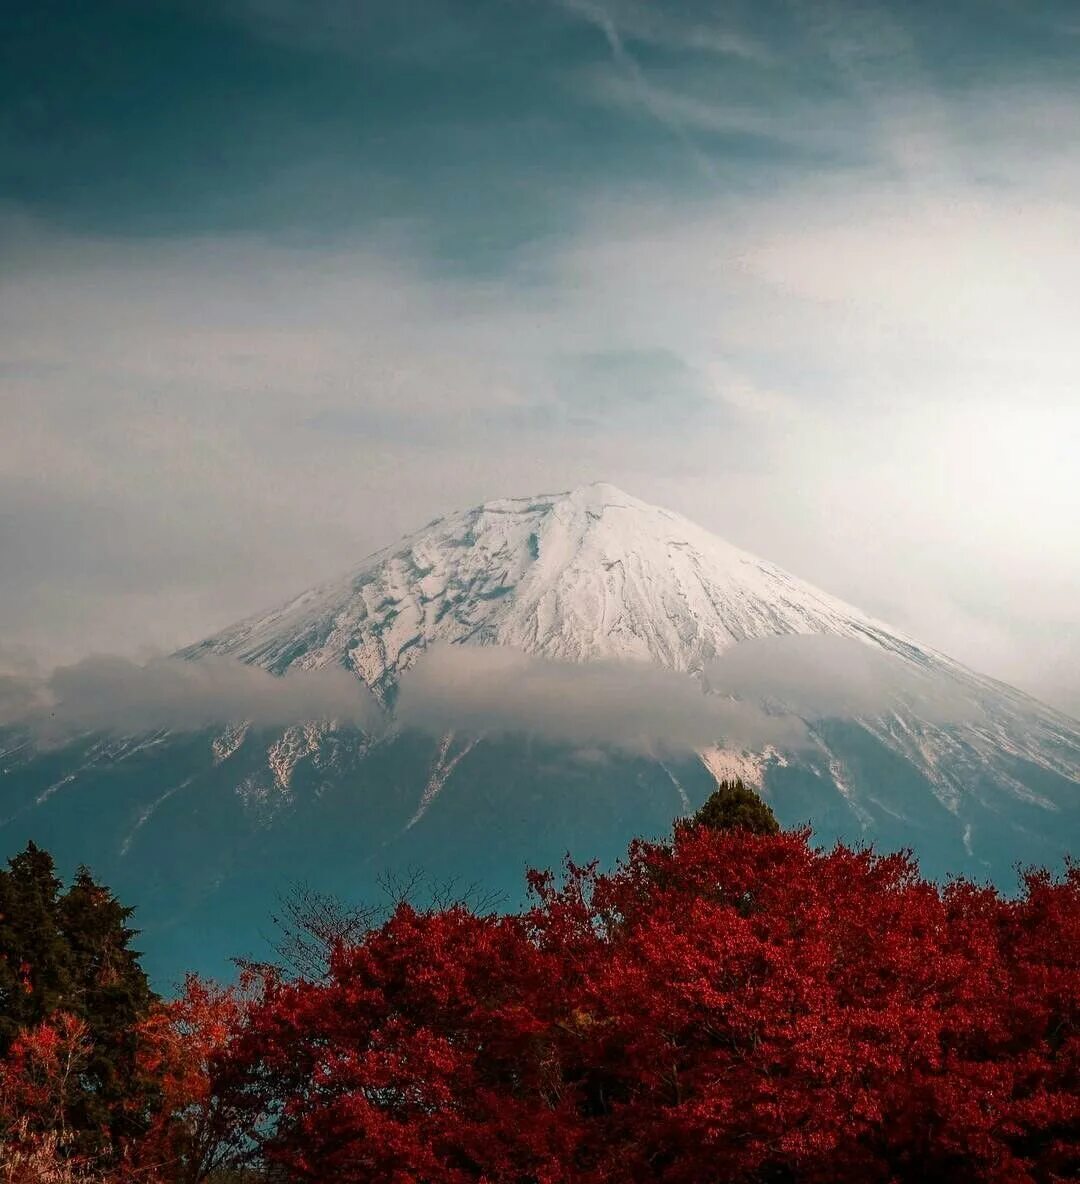 Фудзияма евразия. Гора-вулкан Фудзияма. Токио вулкан Фудзияма. Гора Фудзияма (Фудзи). Фудзи-Сан - Священная гора японцев.